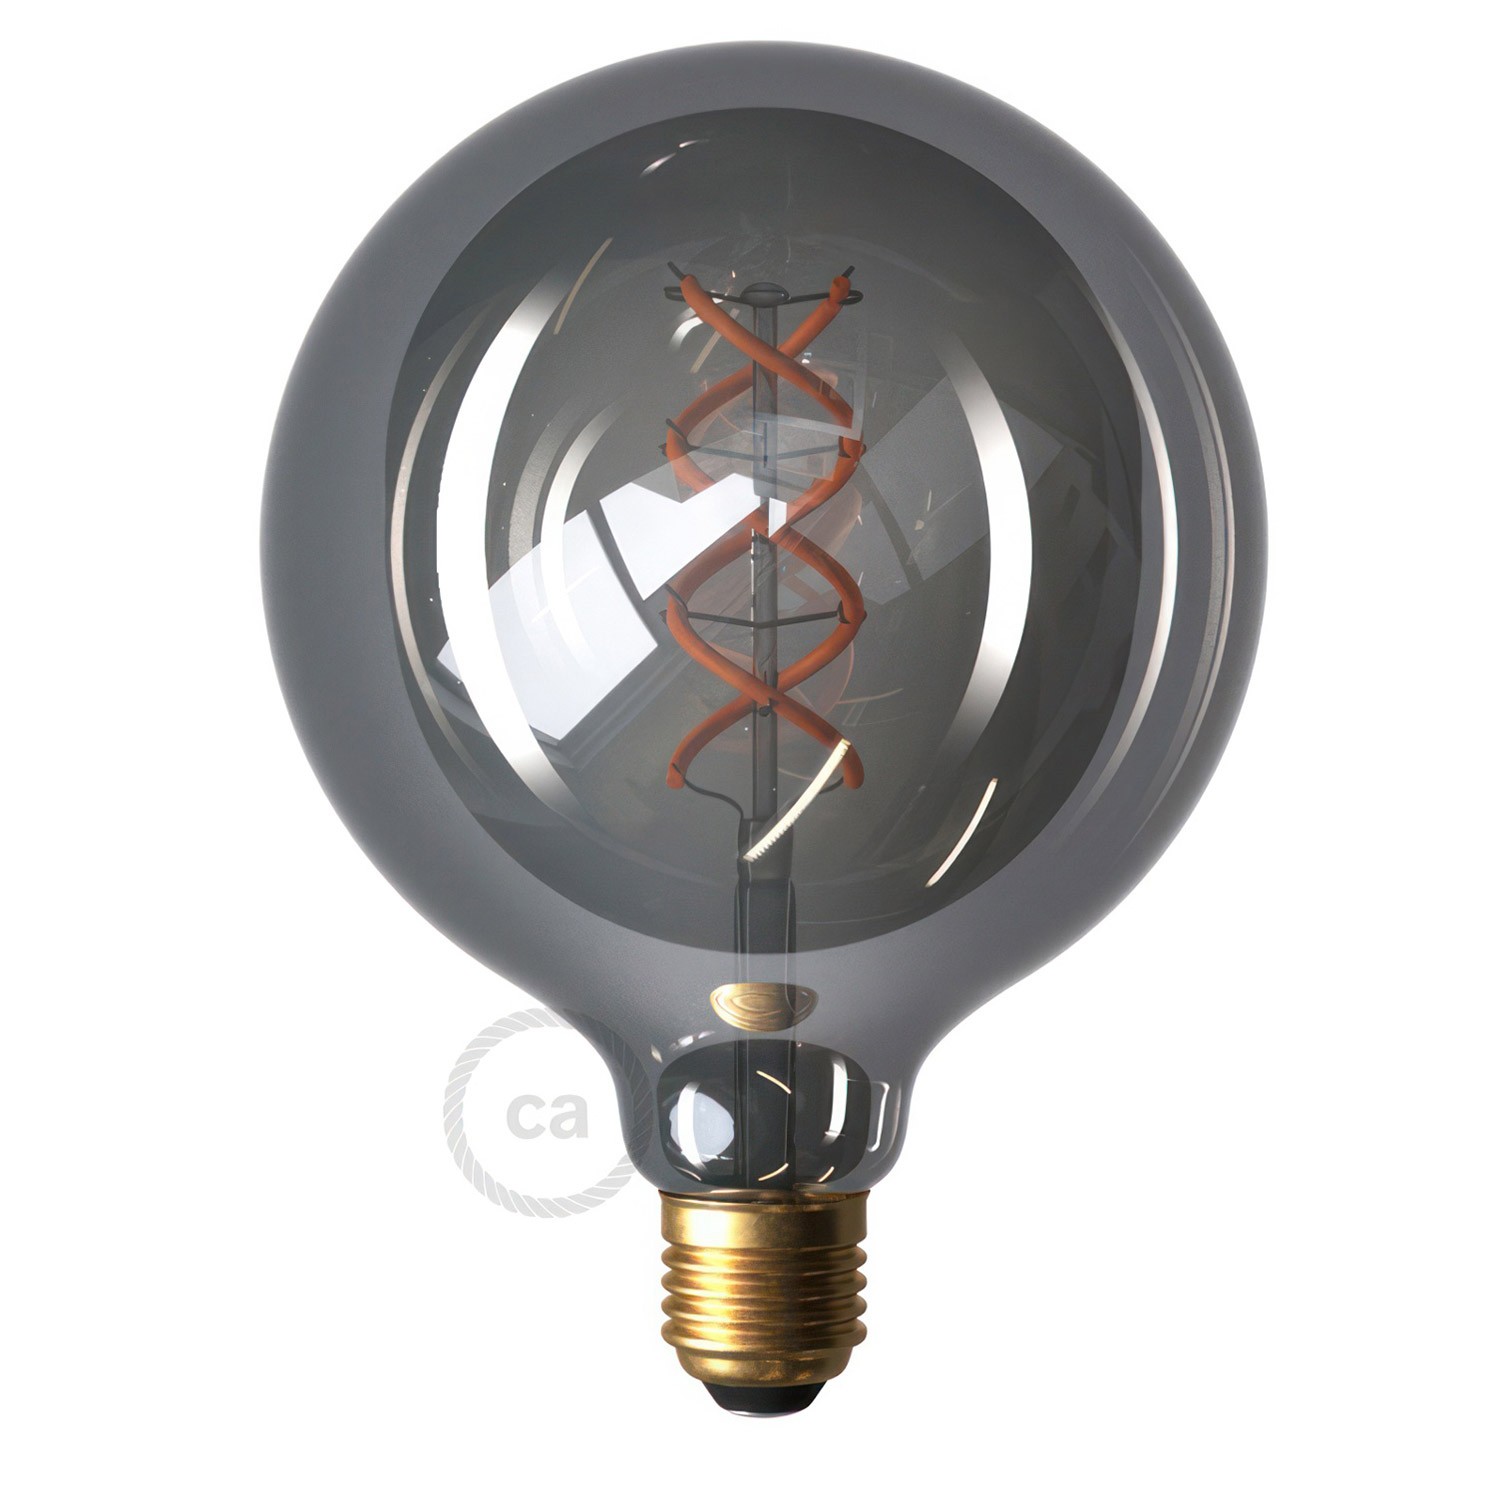 EIVA ELEGANT Outdoor-Pendelleuchte mit Textilkabel, Deckenbefestigung, Silikon-Lampenbaldachin und Lampenfassung, IP65